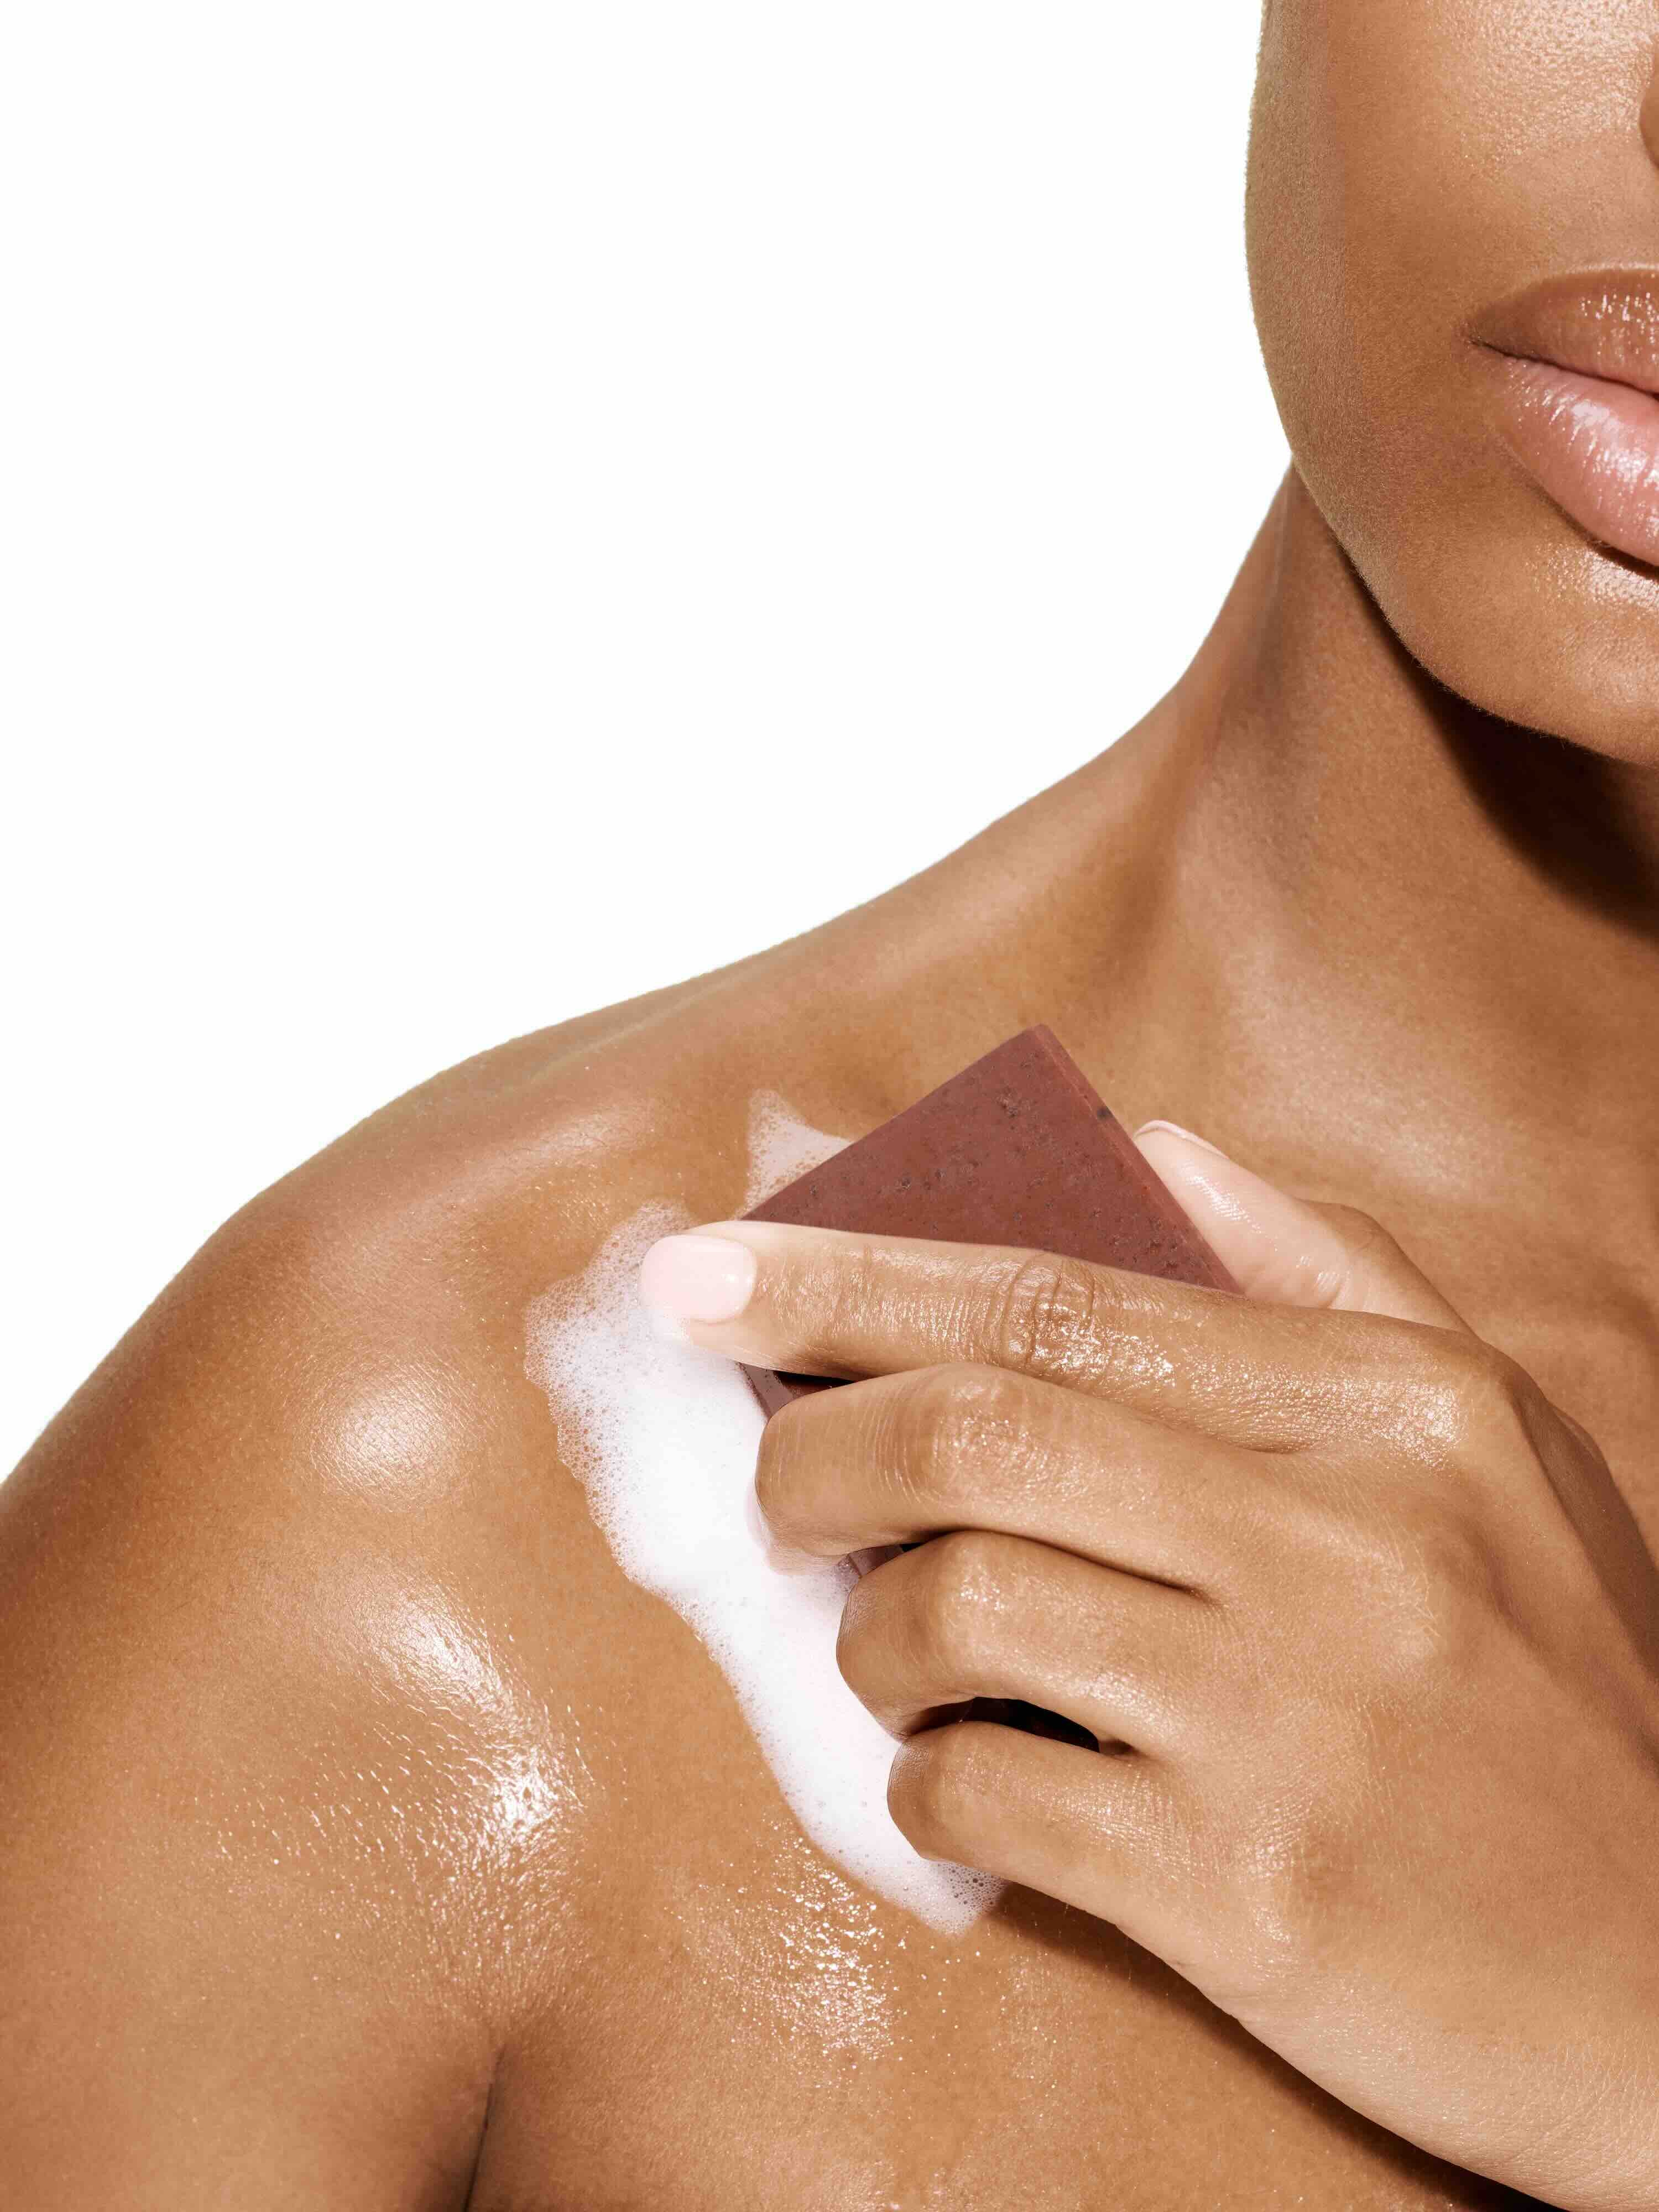 Image of a female model using a bar of Antü Restoring Soap on her shoulder.